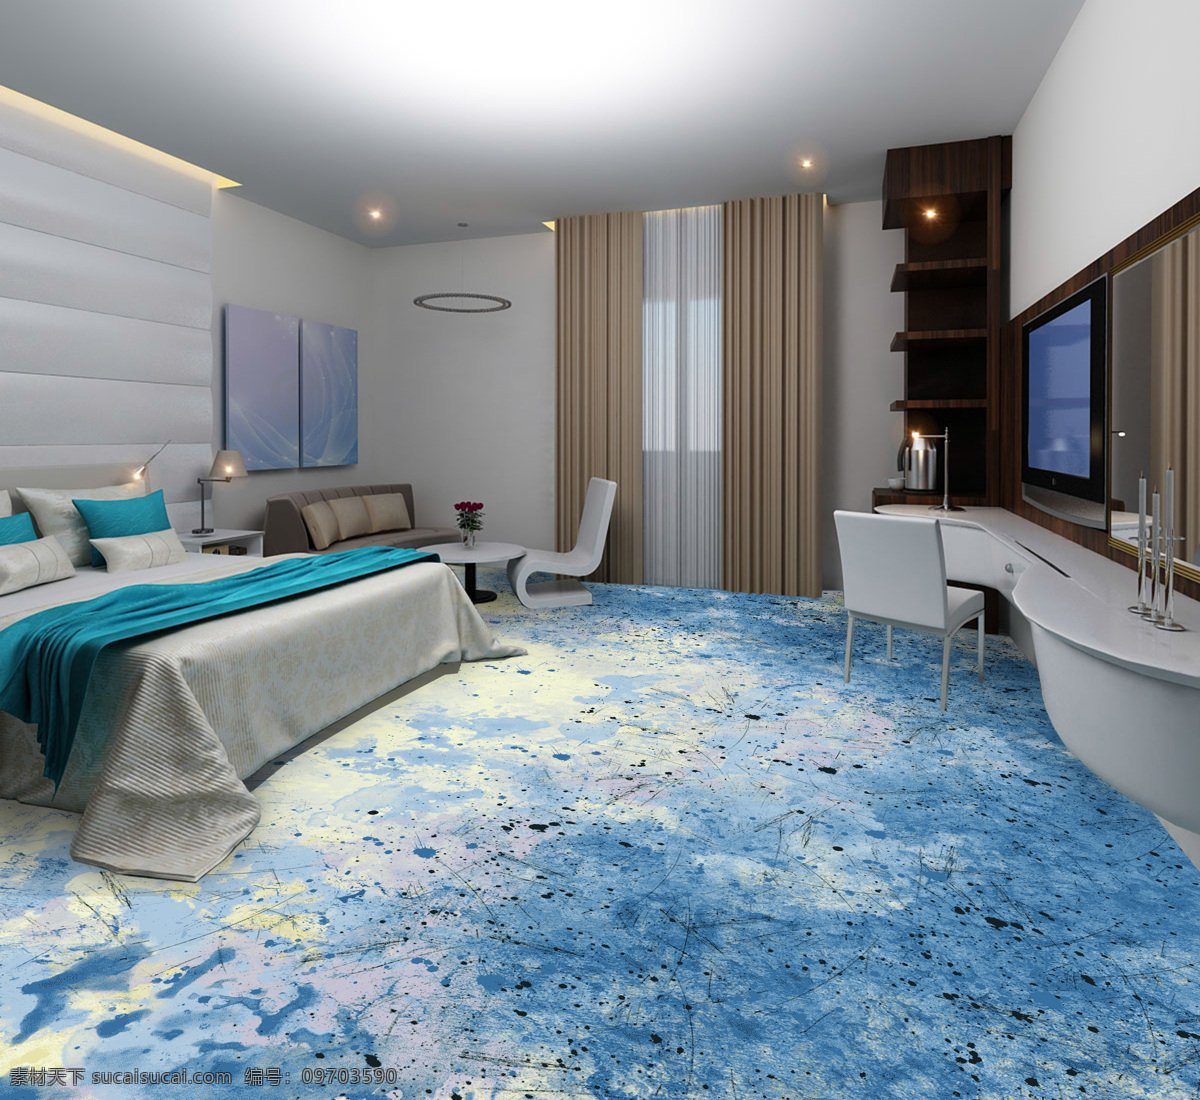 酒店单人间 单人间 酒店客房 地毯图案 水墨 泼墨 地毯设计 设计方案 蓝色调 酒店效果图